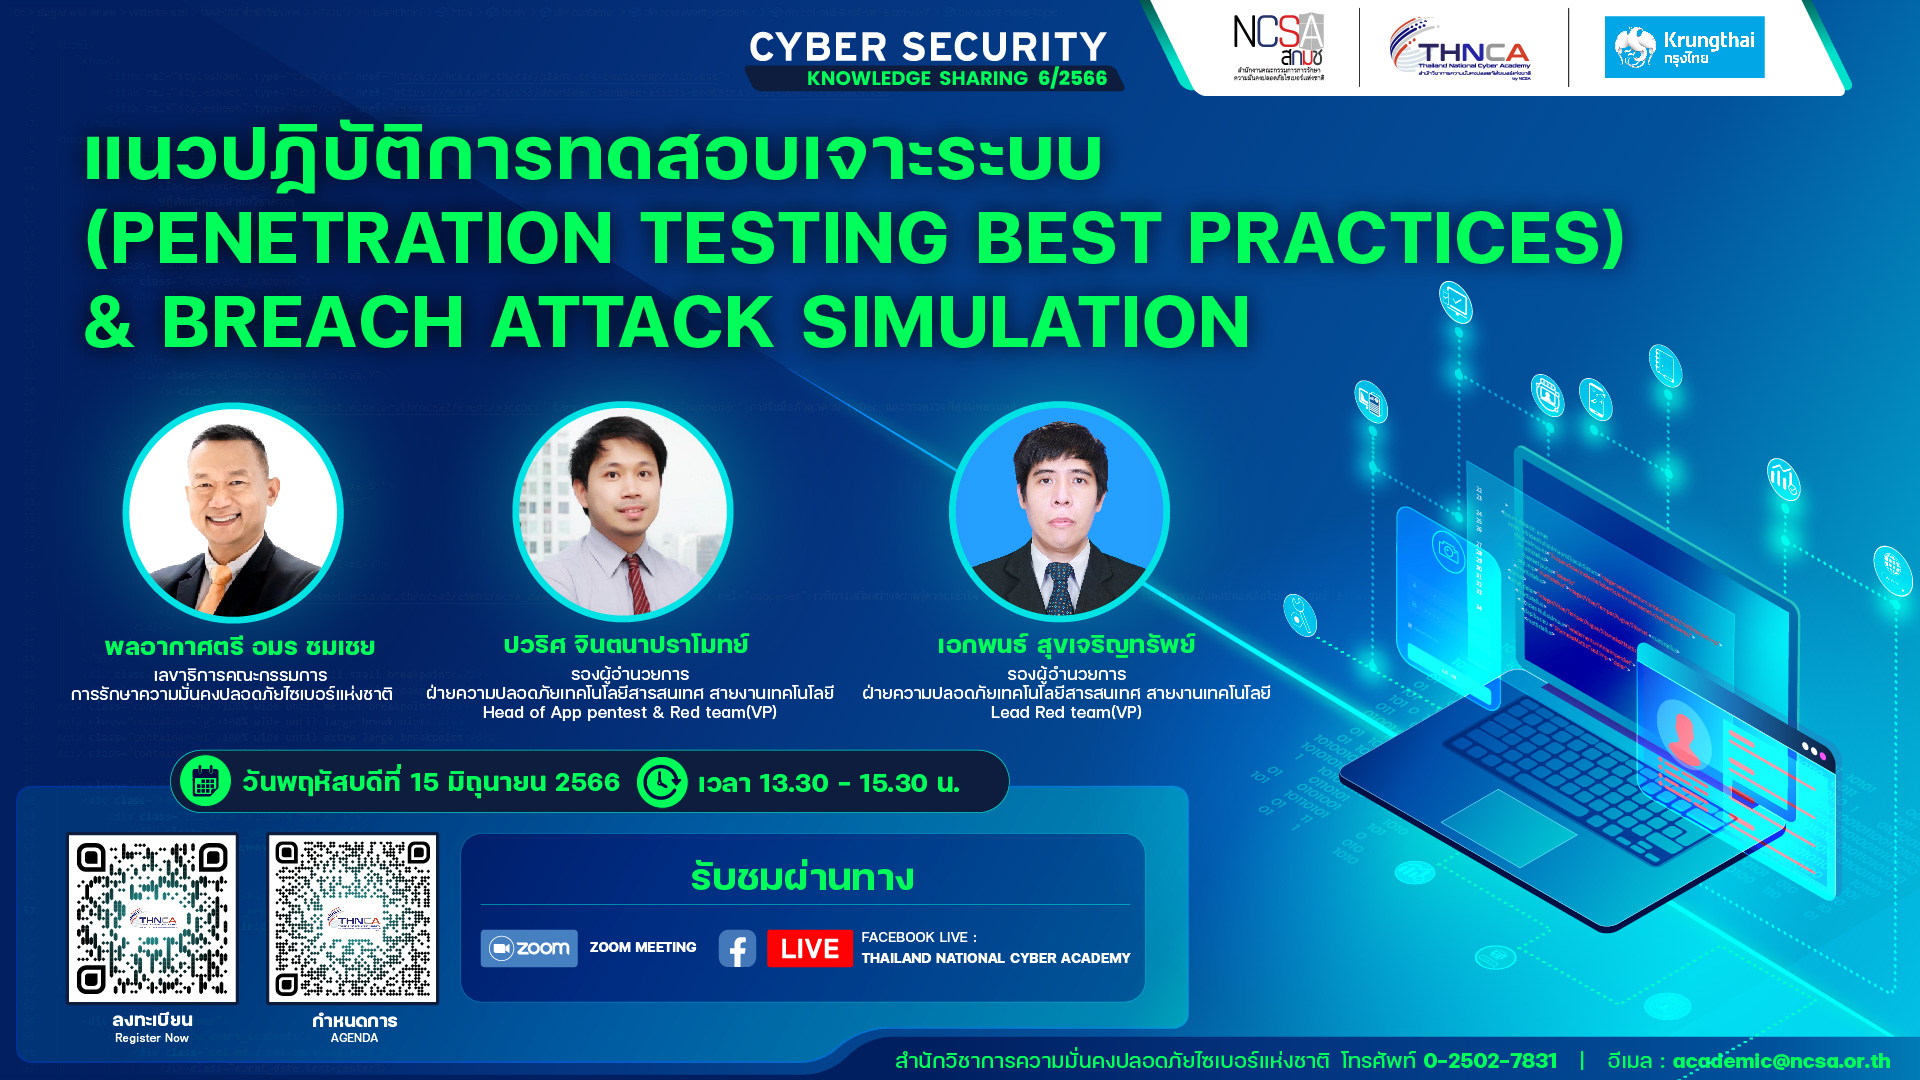 งานสัมมนา Cybersecurity Knowledge Sharing ครั้งที่ 6 หัวข้อ “แนวปฏิบัติการทดสอบเจาะระบบ (Penetration Testing Best Practices) & Breach Attack Simulation”